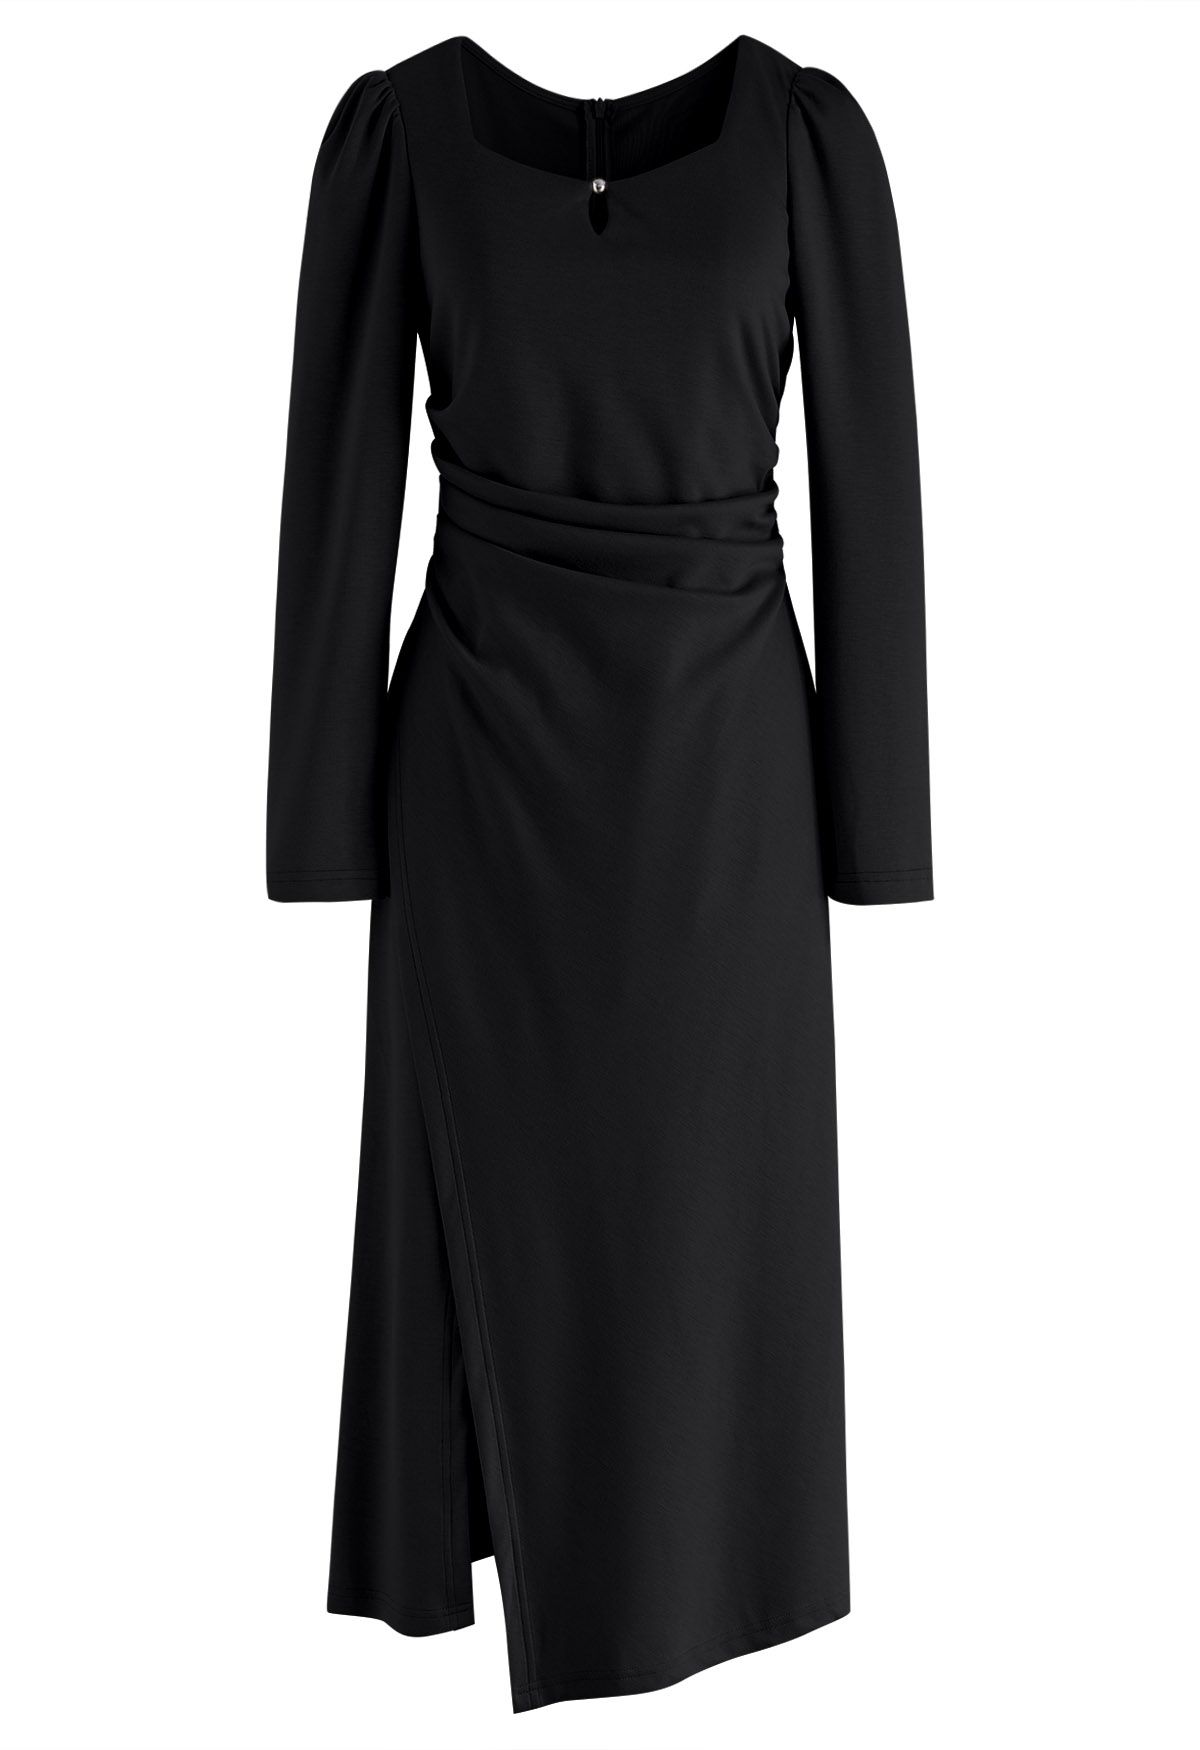 فستان متوسط الطول بفتحة رقبة مربعة ومزين بفتحة الخصر باللون الأسود